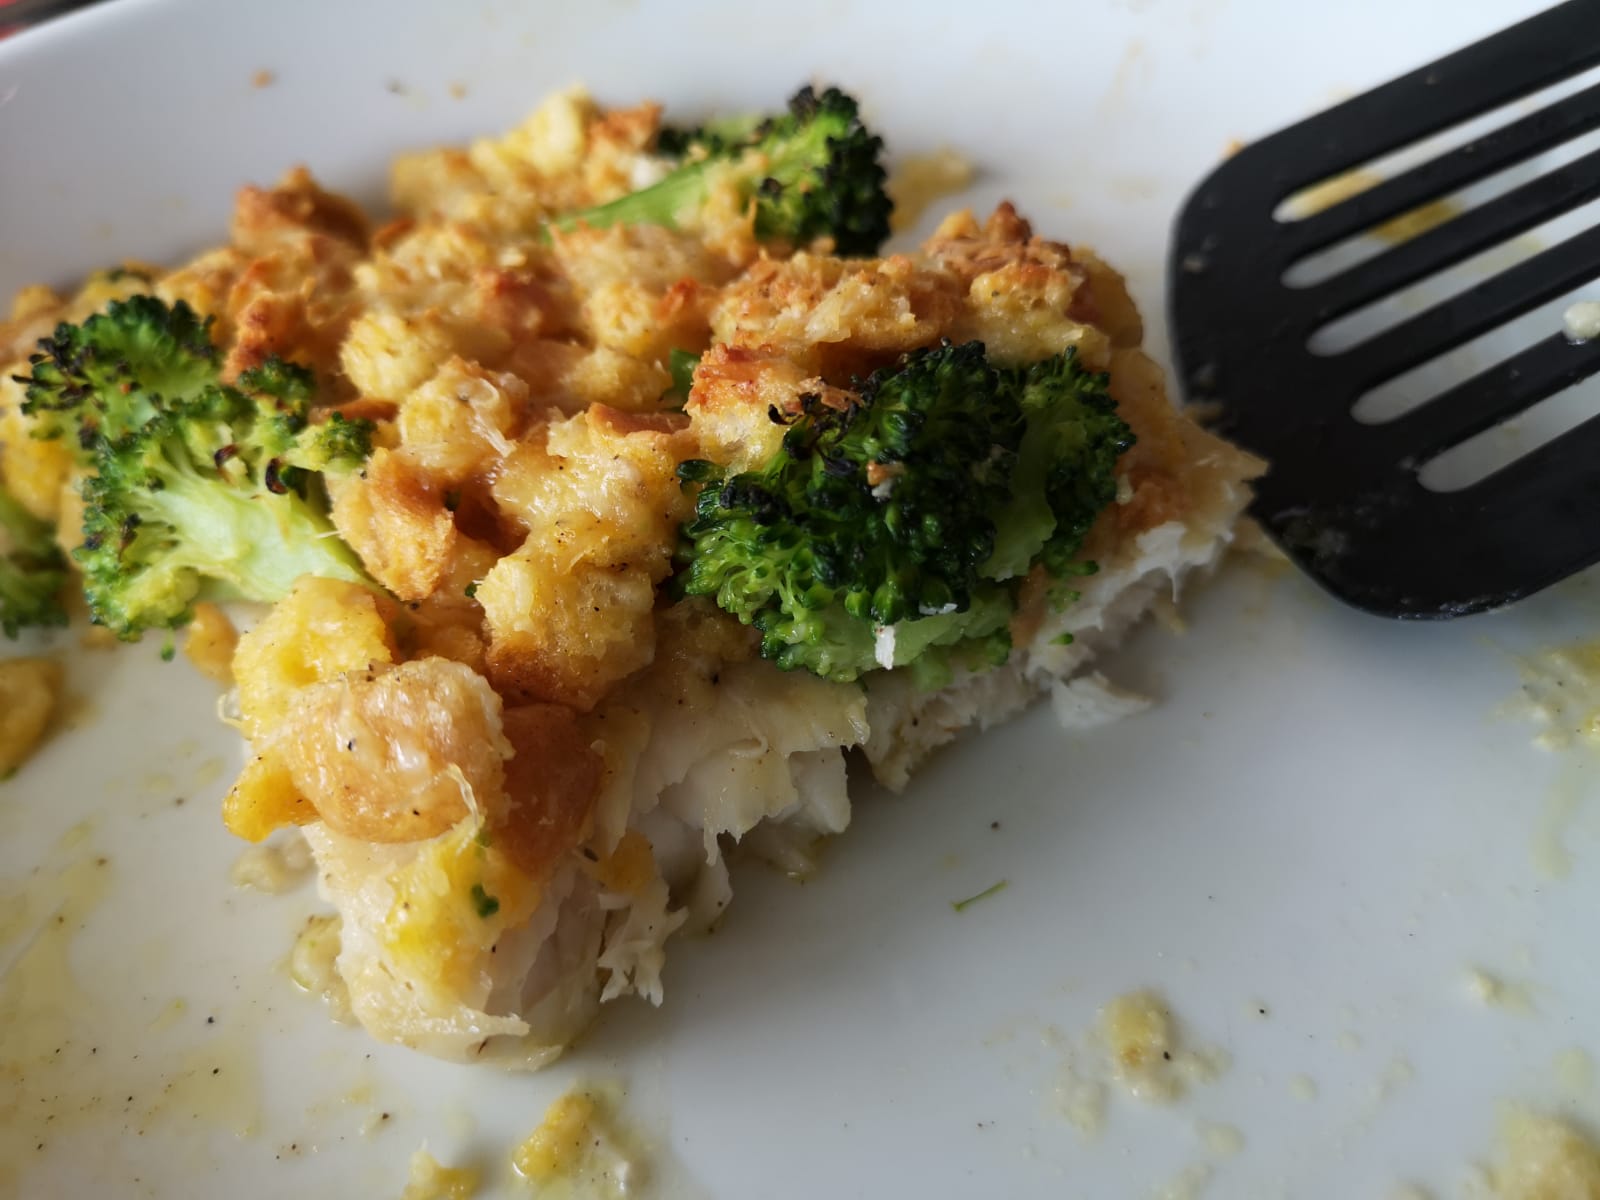 Fischfilets mit Broccoli-Käse-Kruste